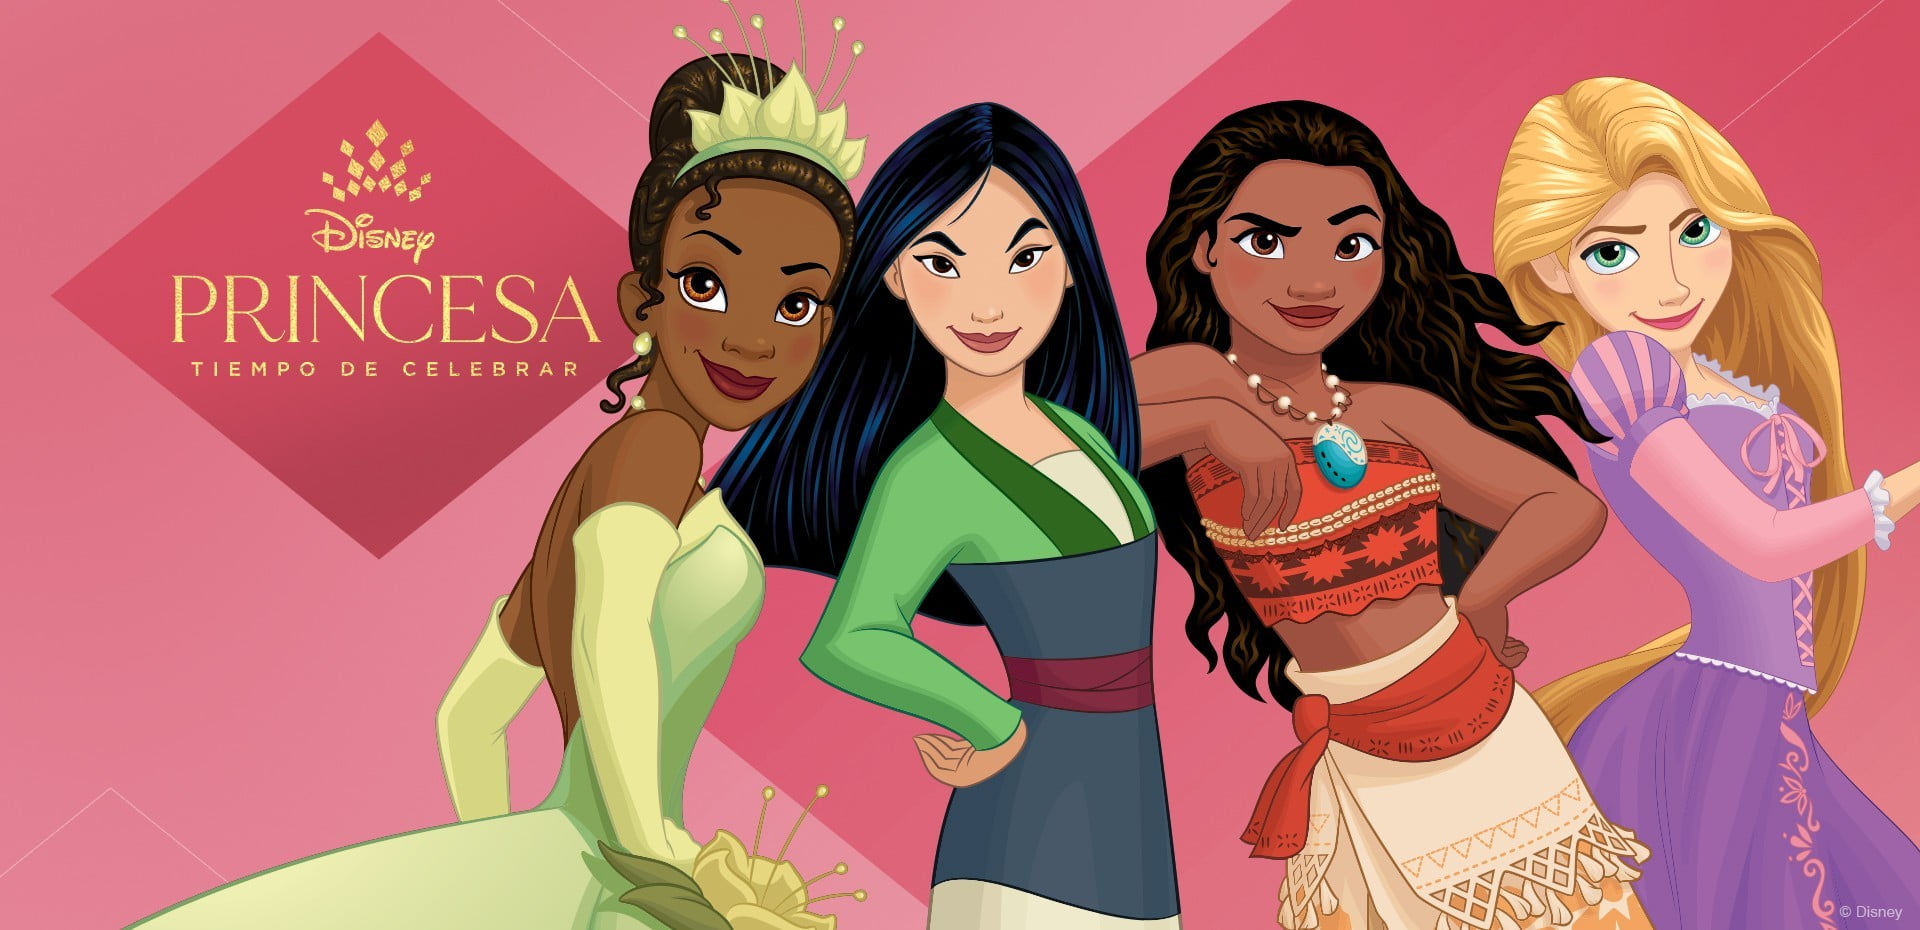 Disney Princesas, iniciativa por el bien de niños, niñas y jóvenes